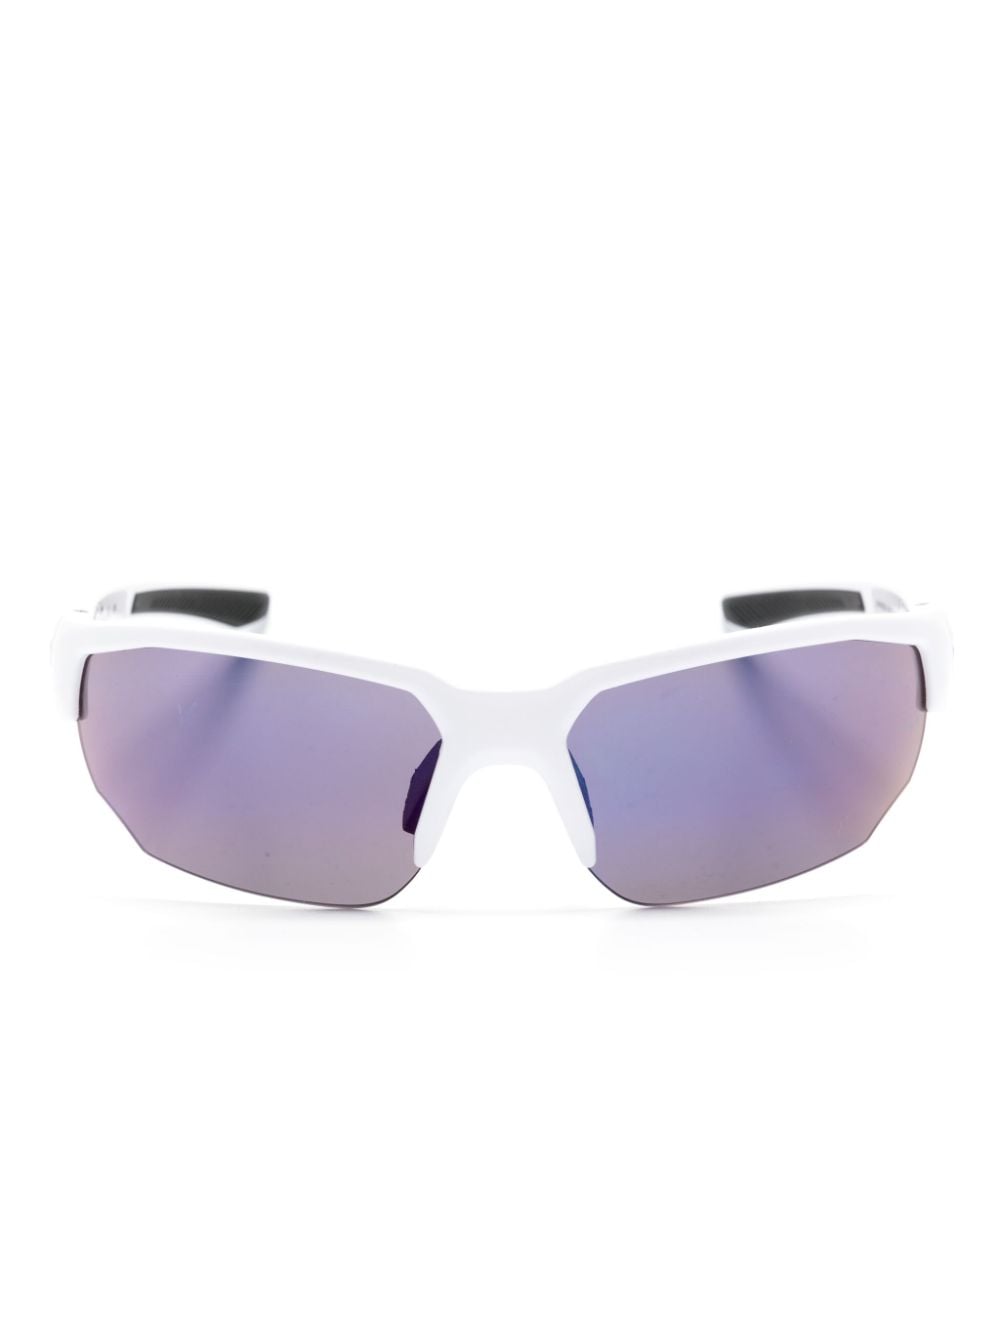 half-rim geometric sunglasses